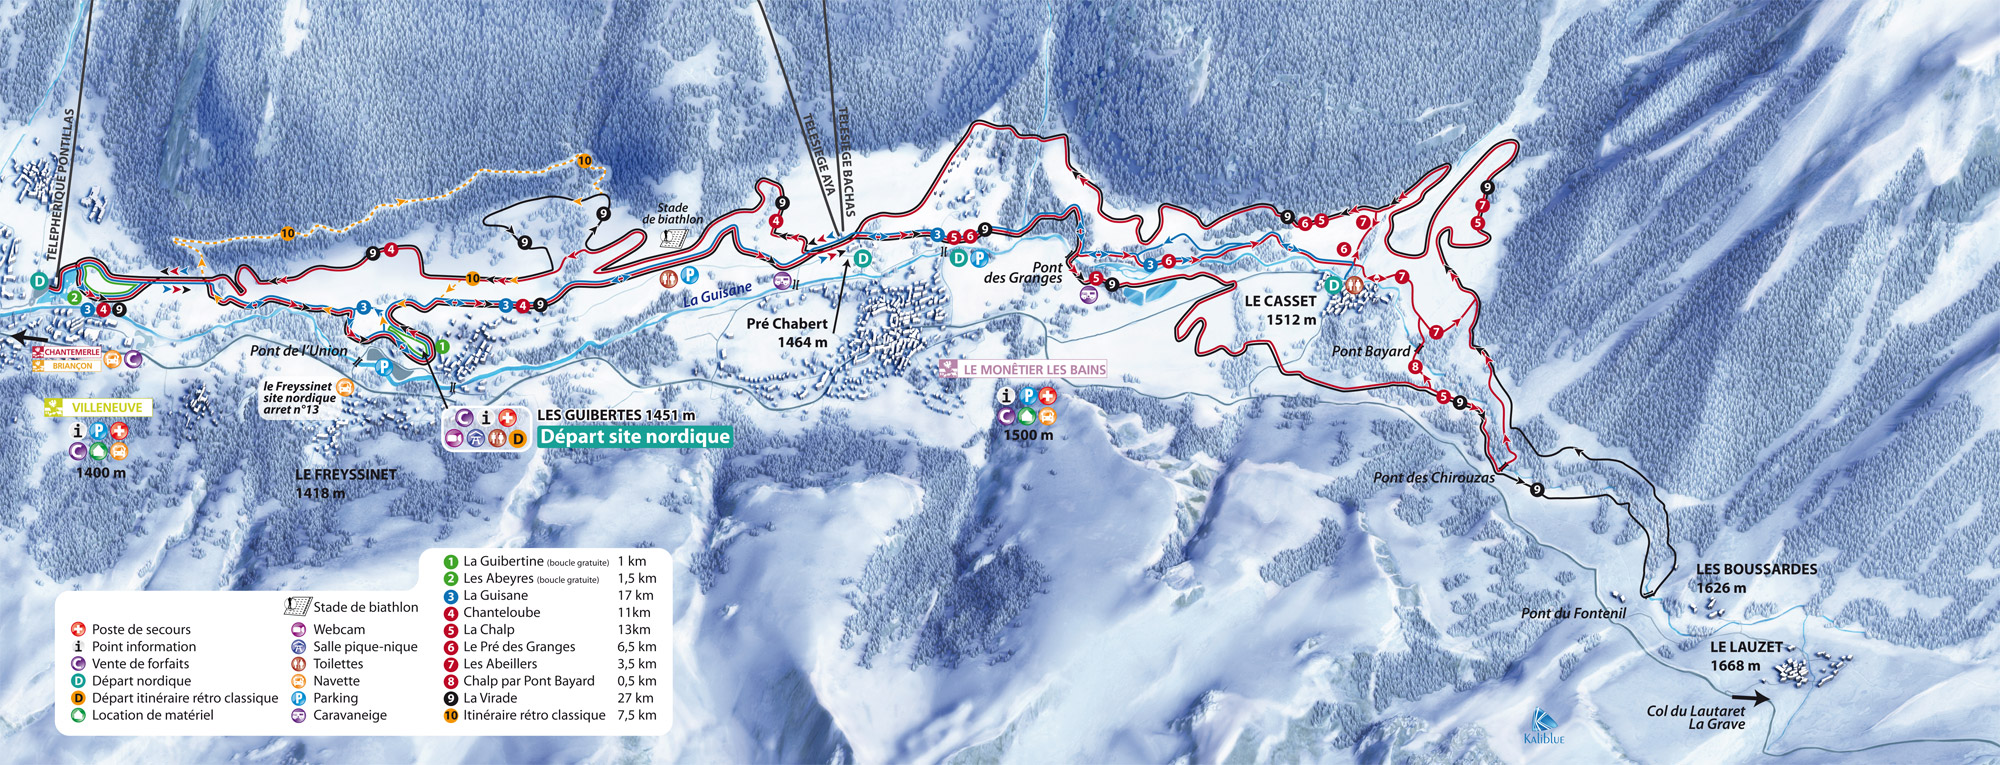 Volltreffer Microfaser Piste Map Serre Chevalier-ein Ski Karte & Objektiv Tuch in 1 